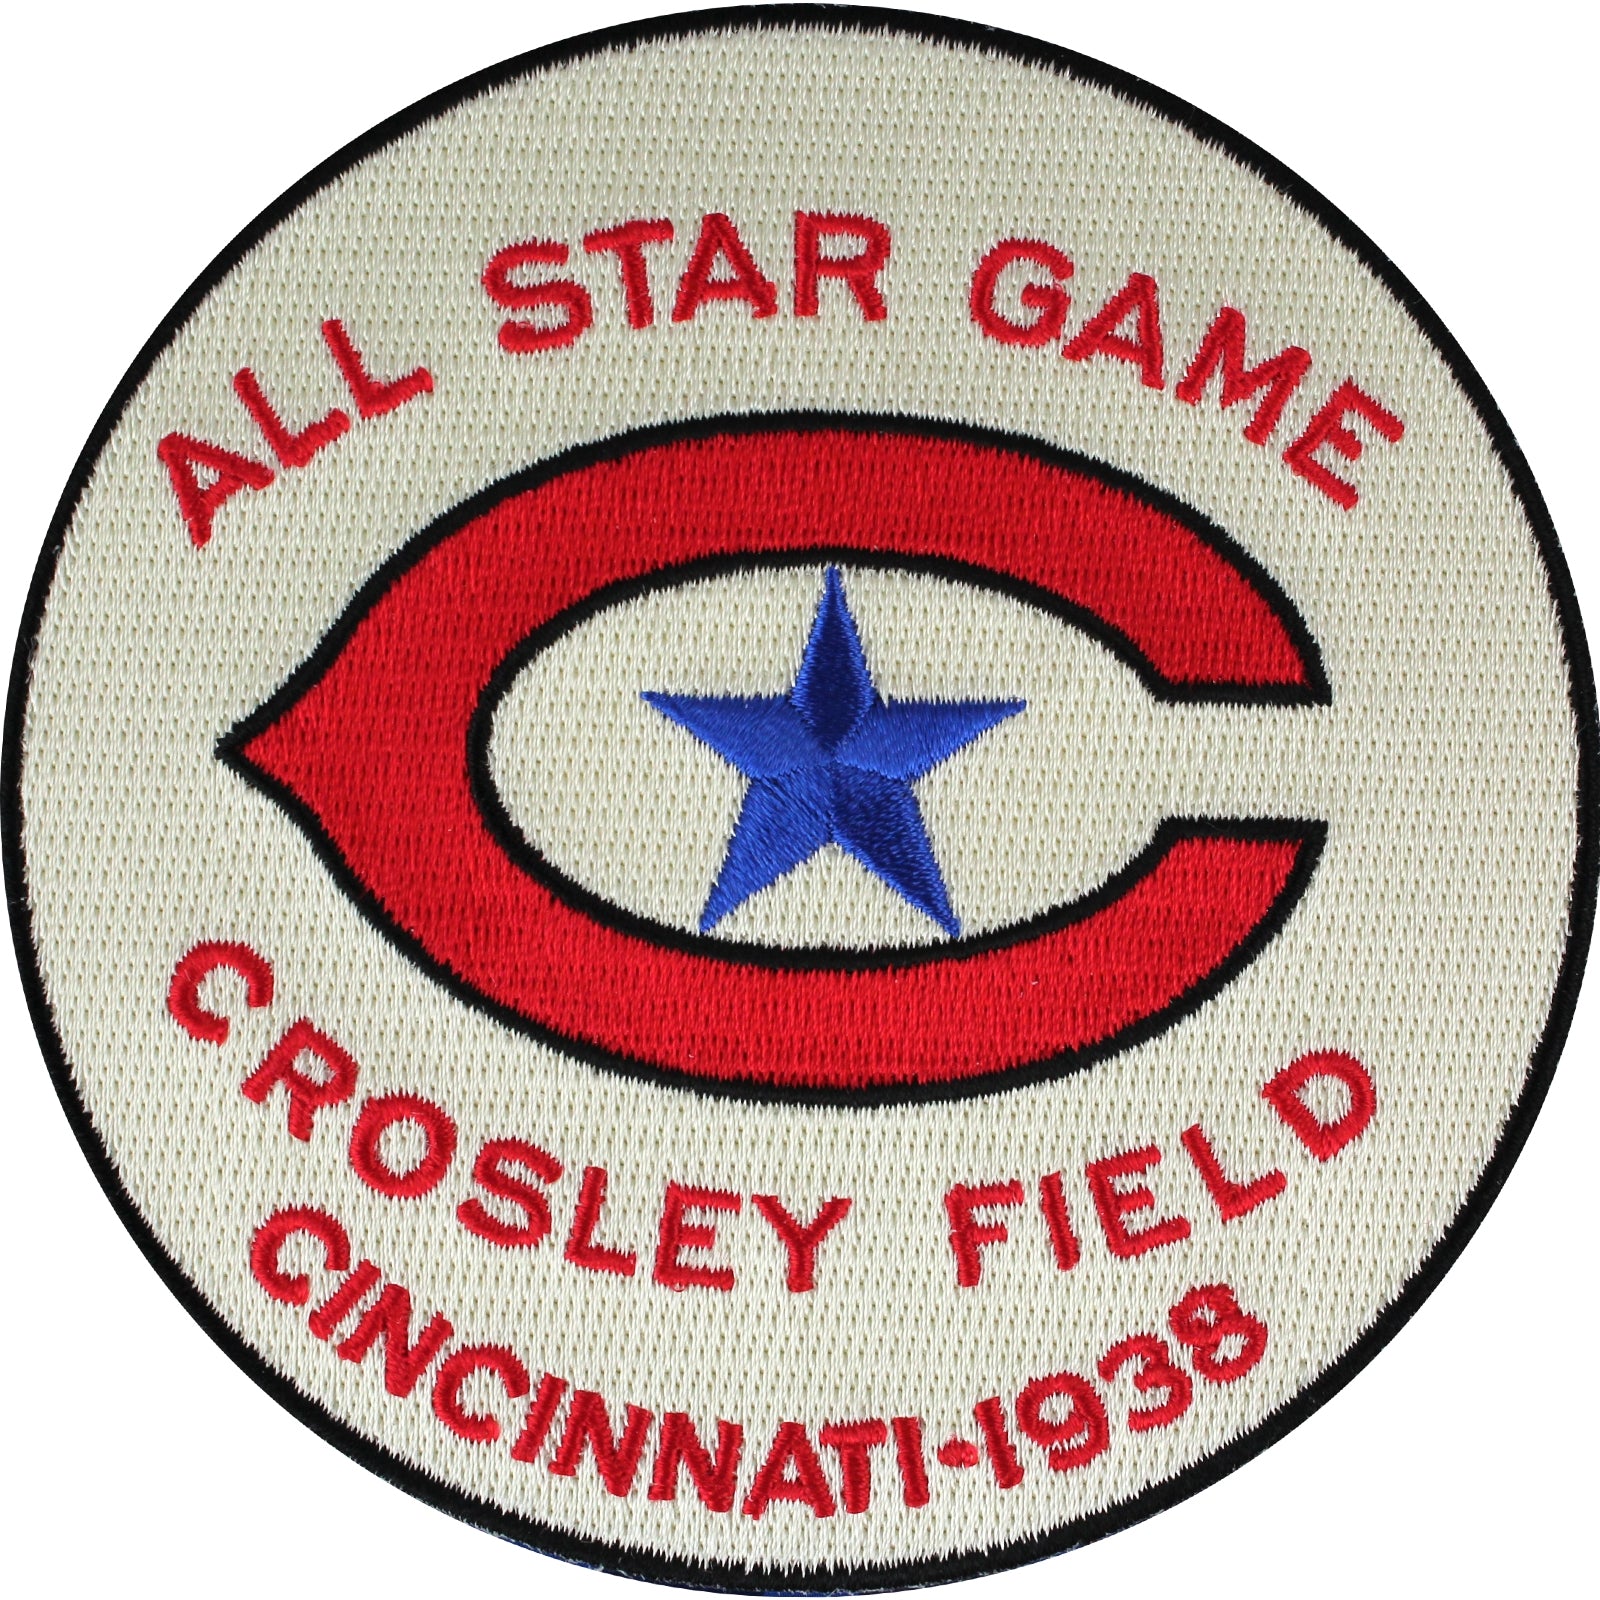 Cincinnati Reds 1938 All-Star Game Patch